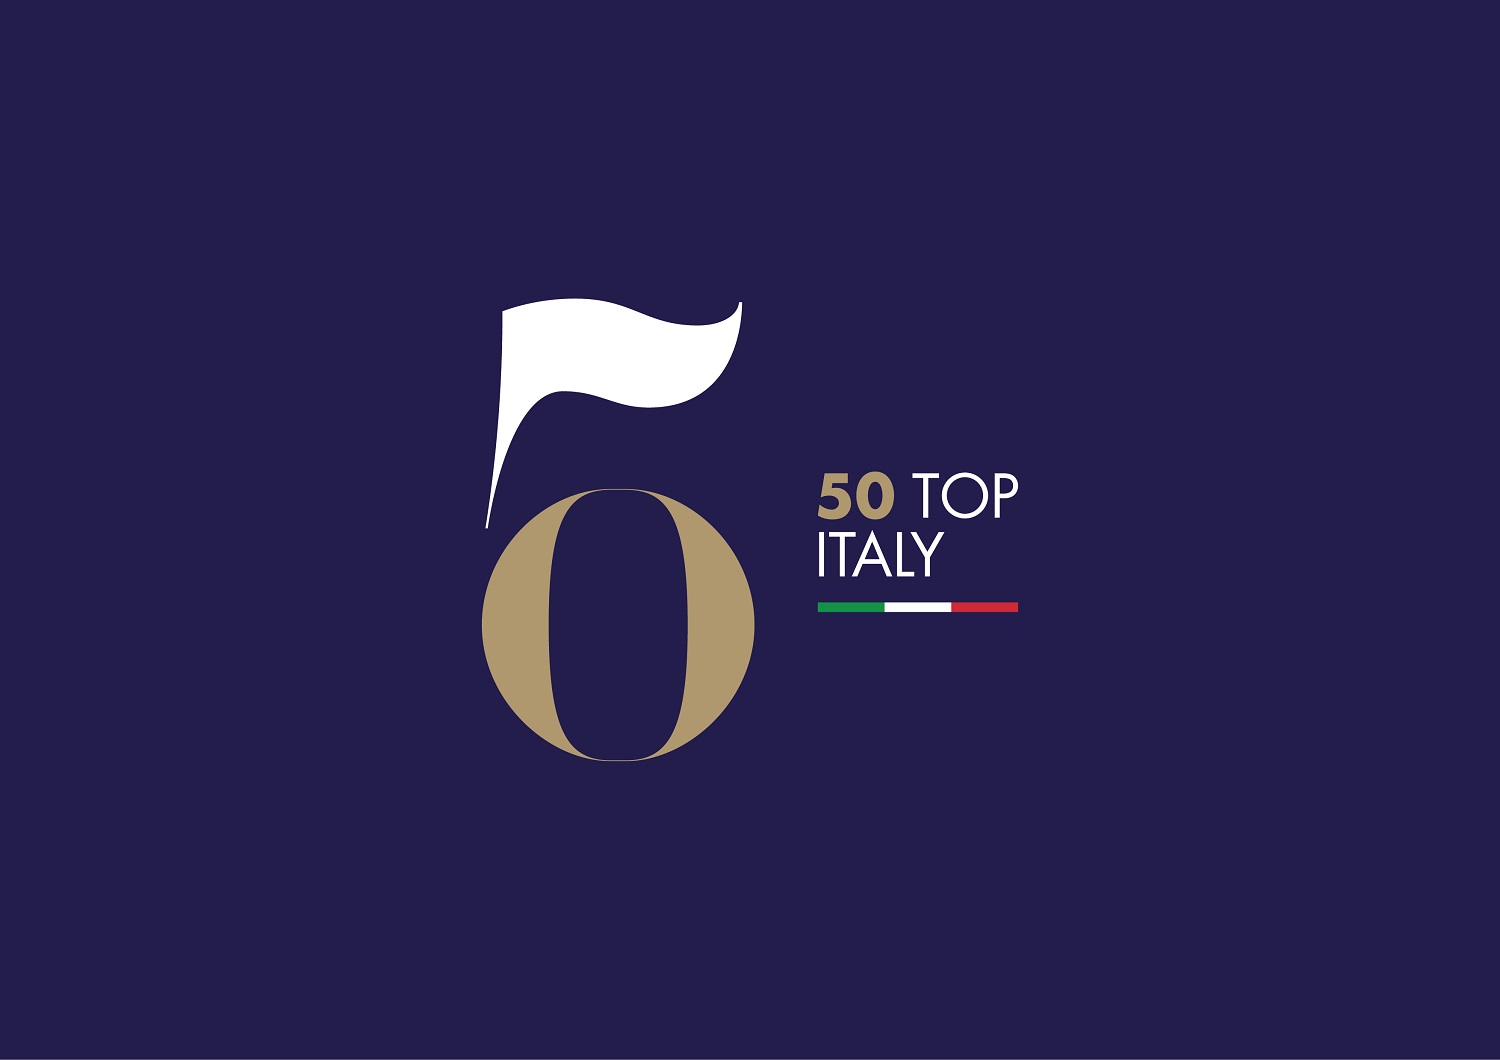 50 Top Italy 2022: Sora Maria e Arcangelo è la migliore trattoria d’Italia